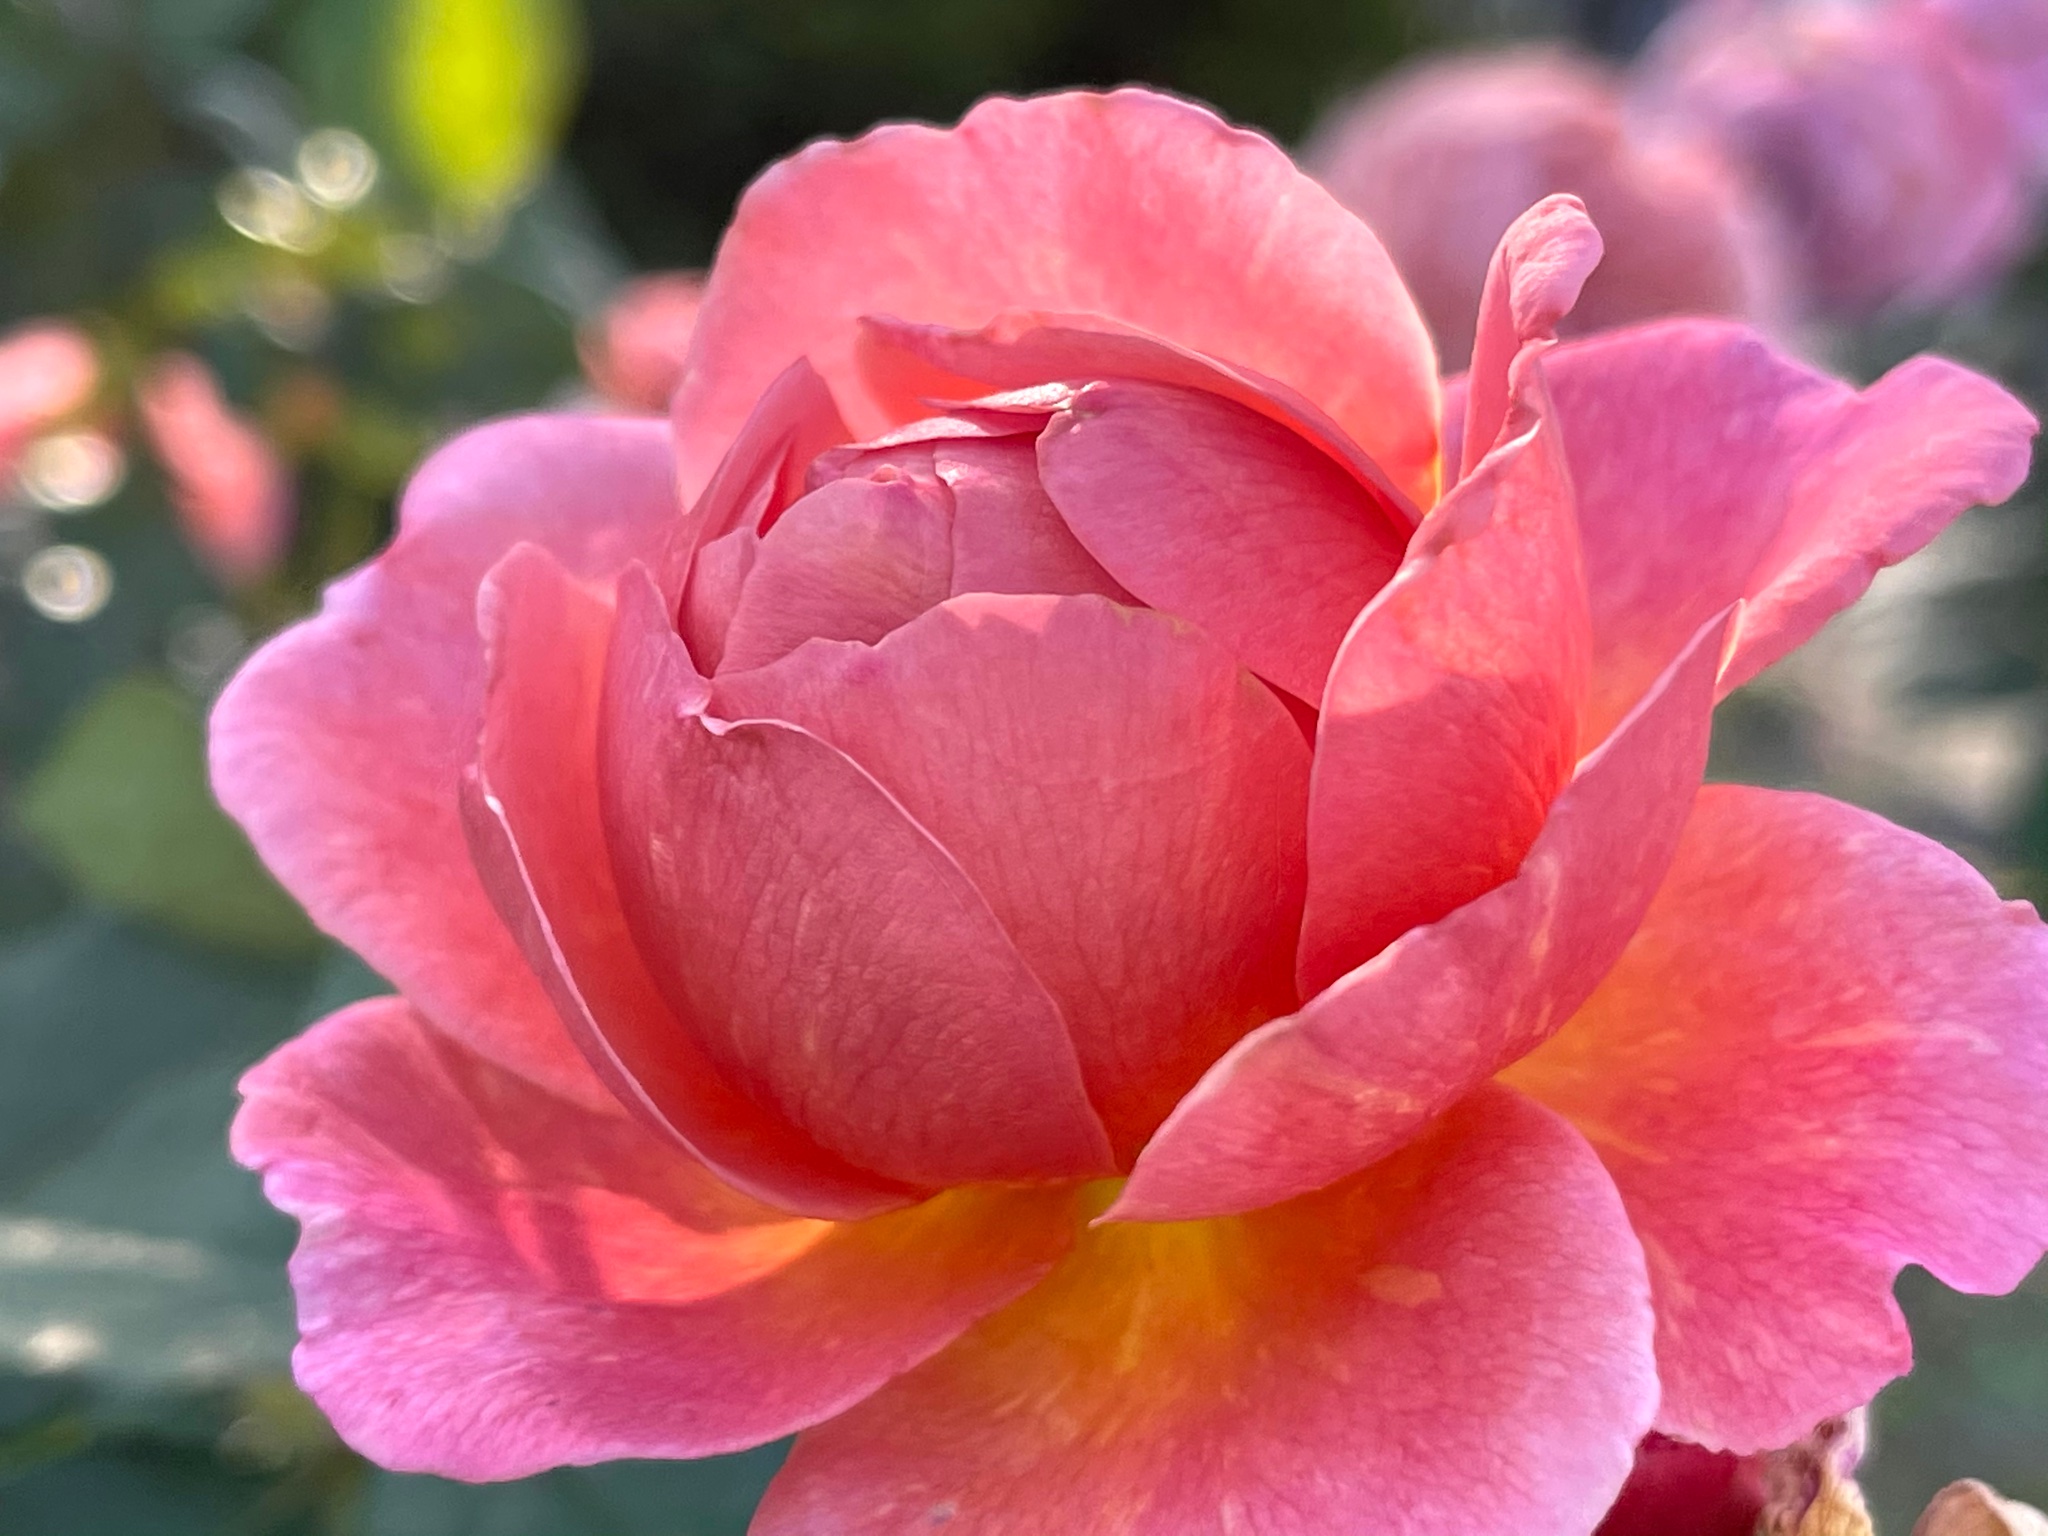 Iwa1122rose 薔薇は かおりかざり Rose Kaori Kazari Good Night 素敵な夢を Roses バラ 茨木市 若園公園 かおりかざり Rosesgarden ガーデニング T Co Cax8qf1wfd Twitter